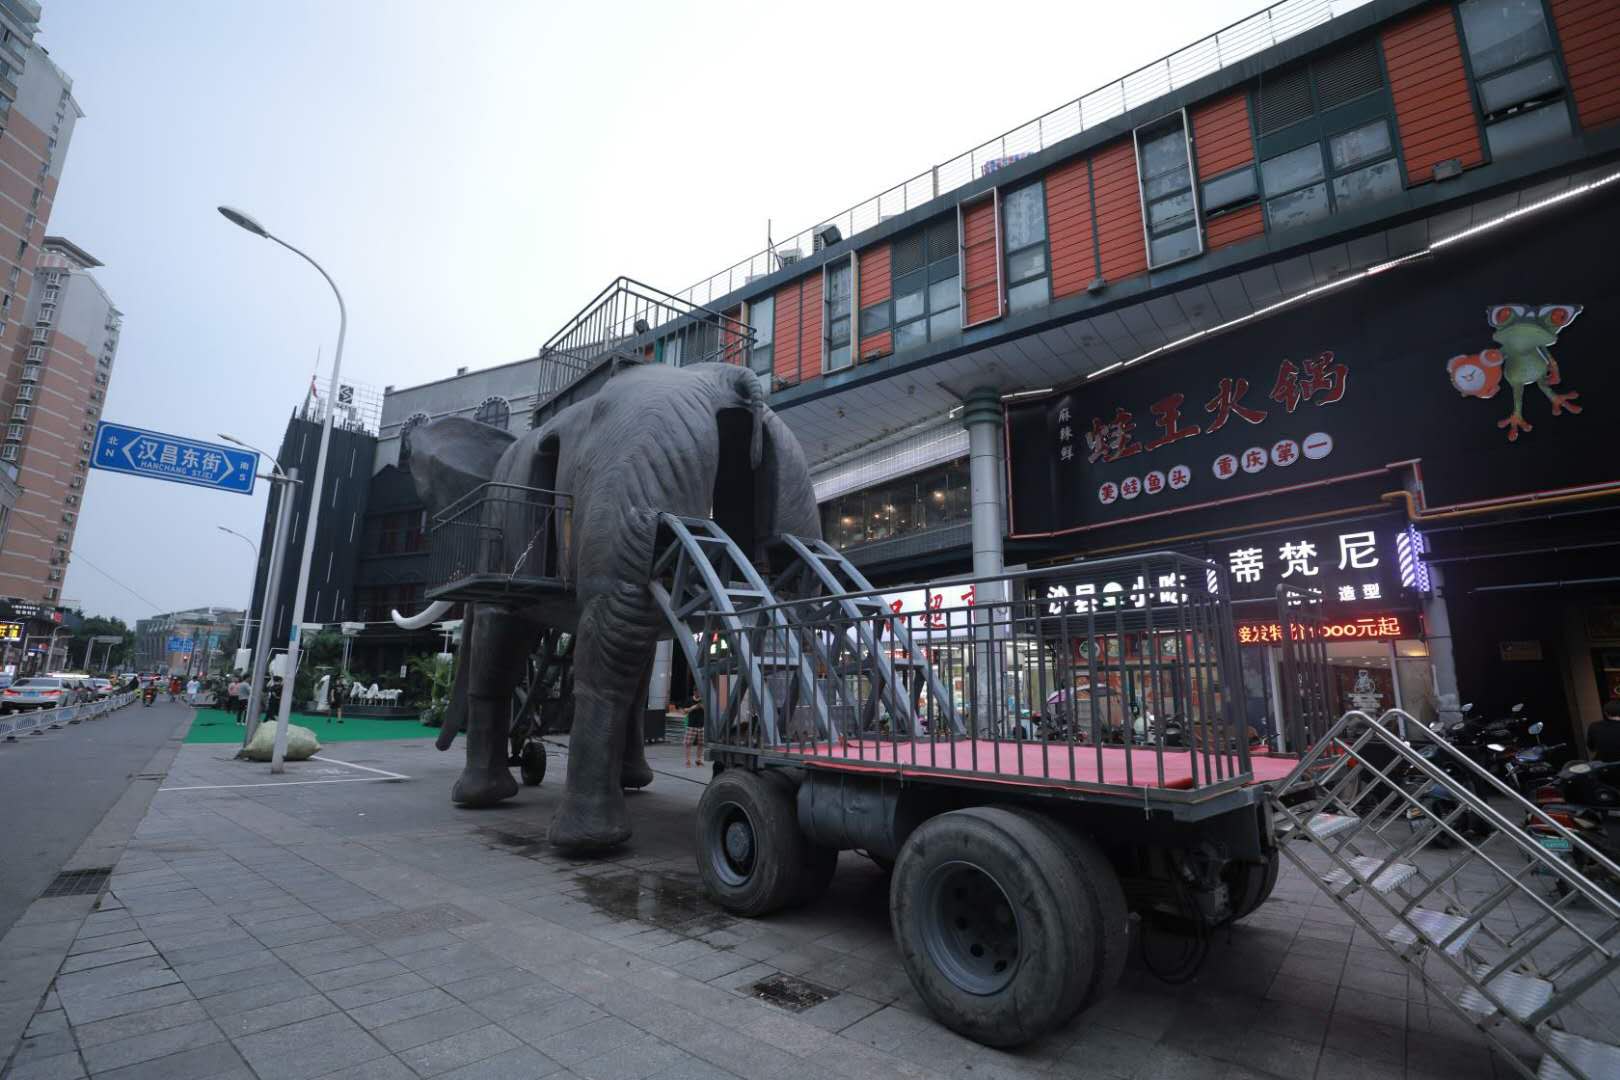 会喷火机械大象,全国出租出售展览